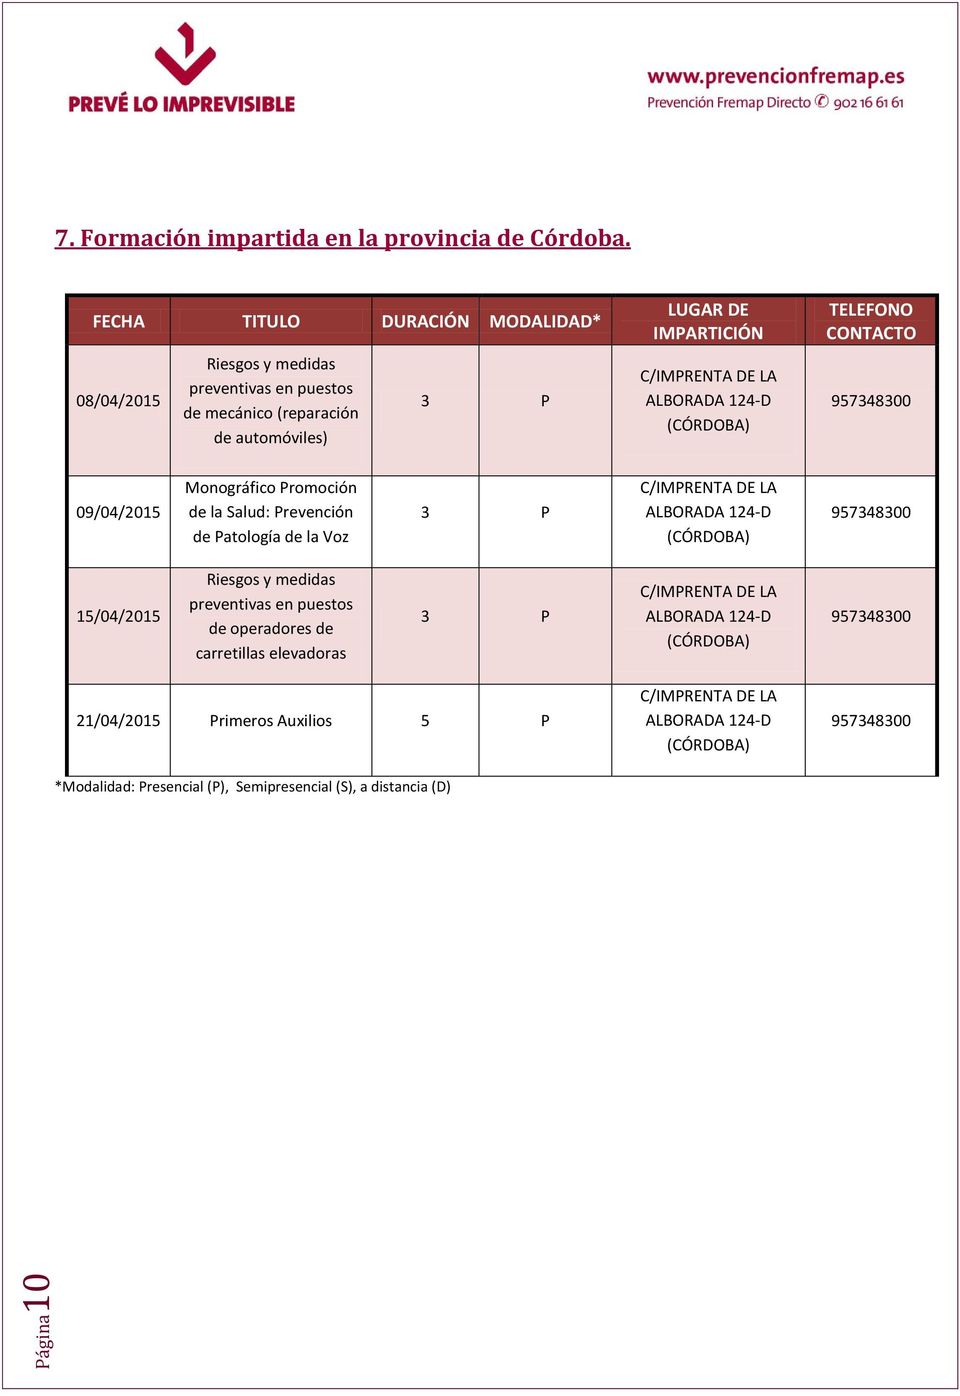 09/04/2015 Monográfico Promoción de la Salud: Prevención de Patología de la Voz C/IMPRENTA DE LA ALBORADA 124-D (CÓRDOBA)